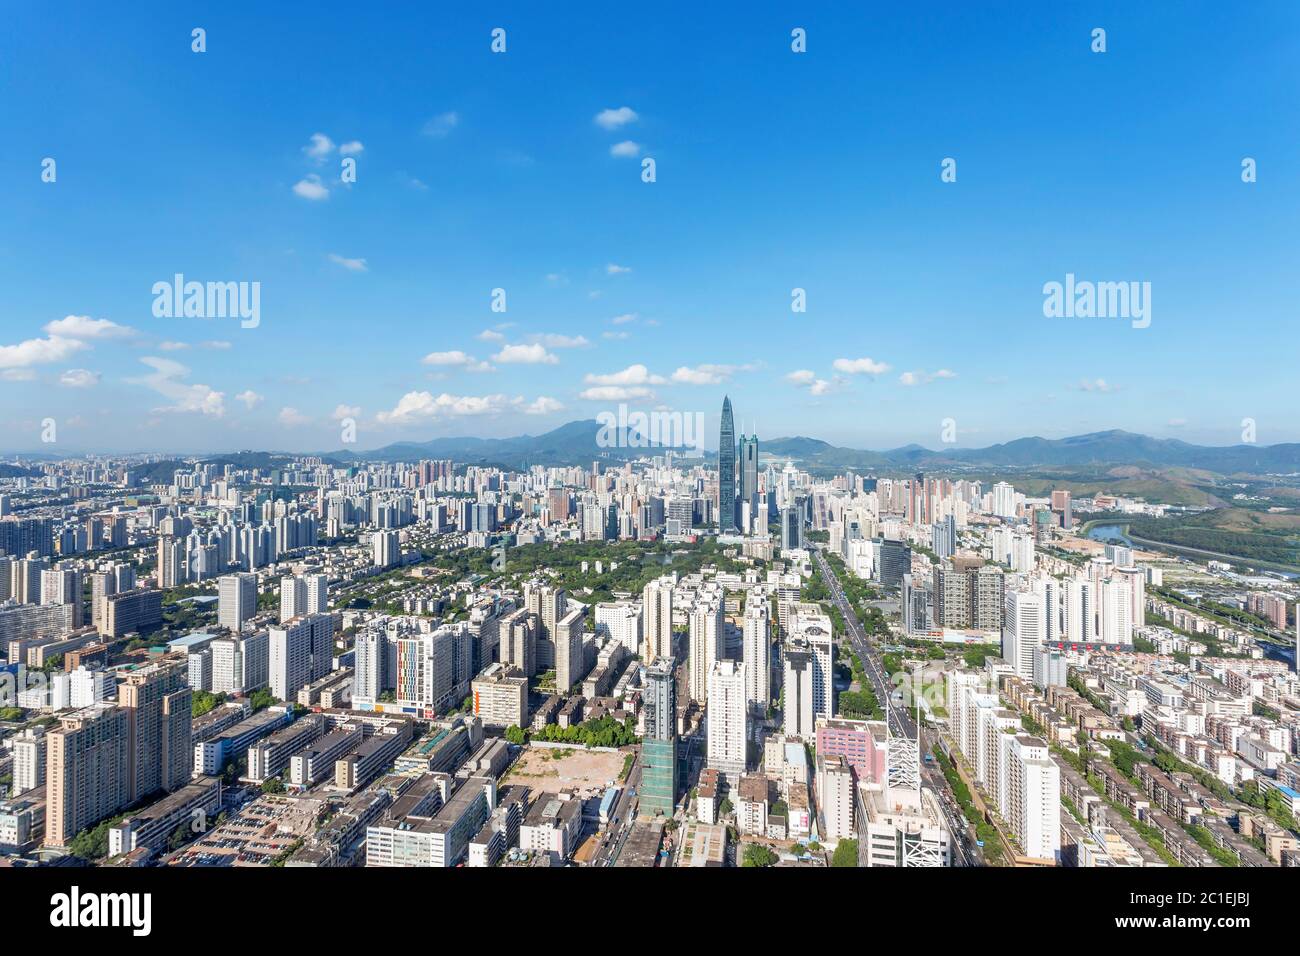 skyline of modern city shenzhen Stock Photo